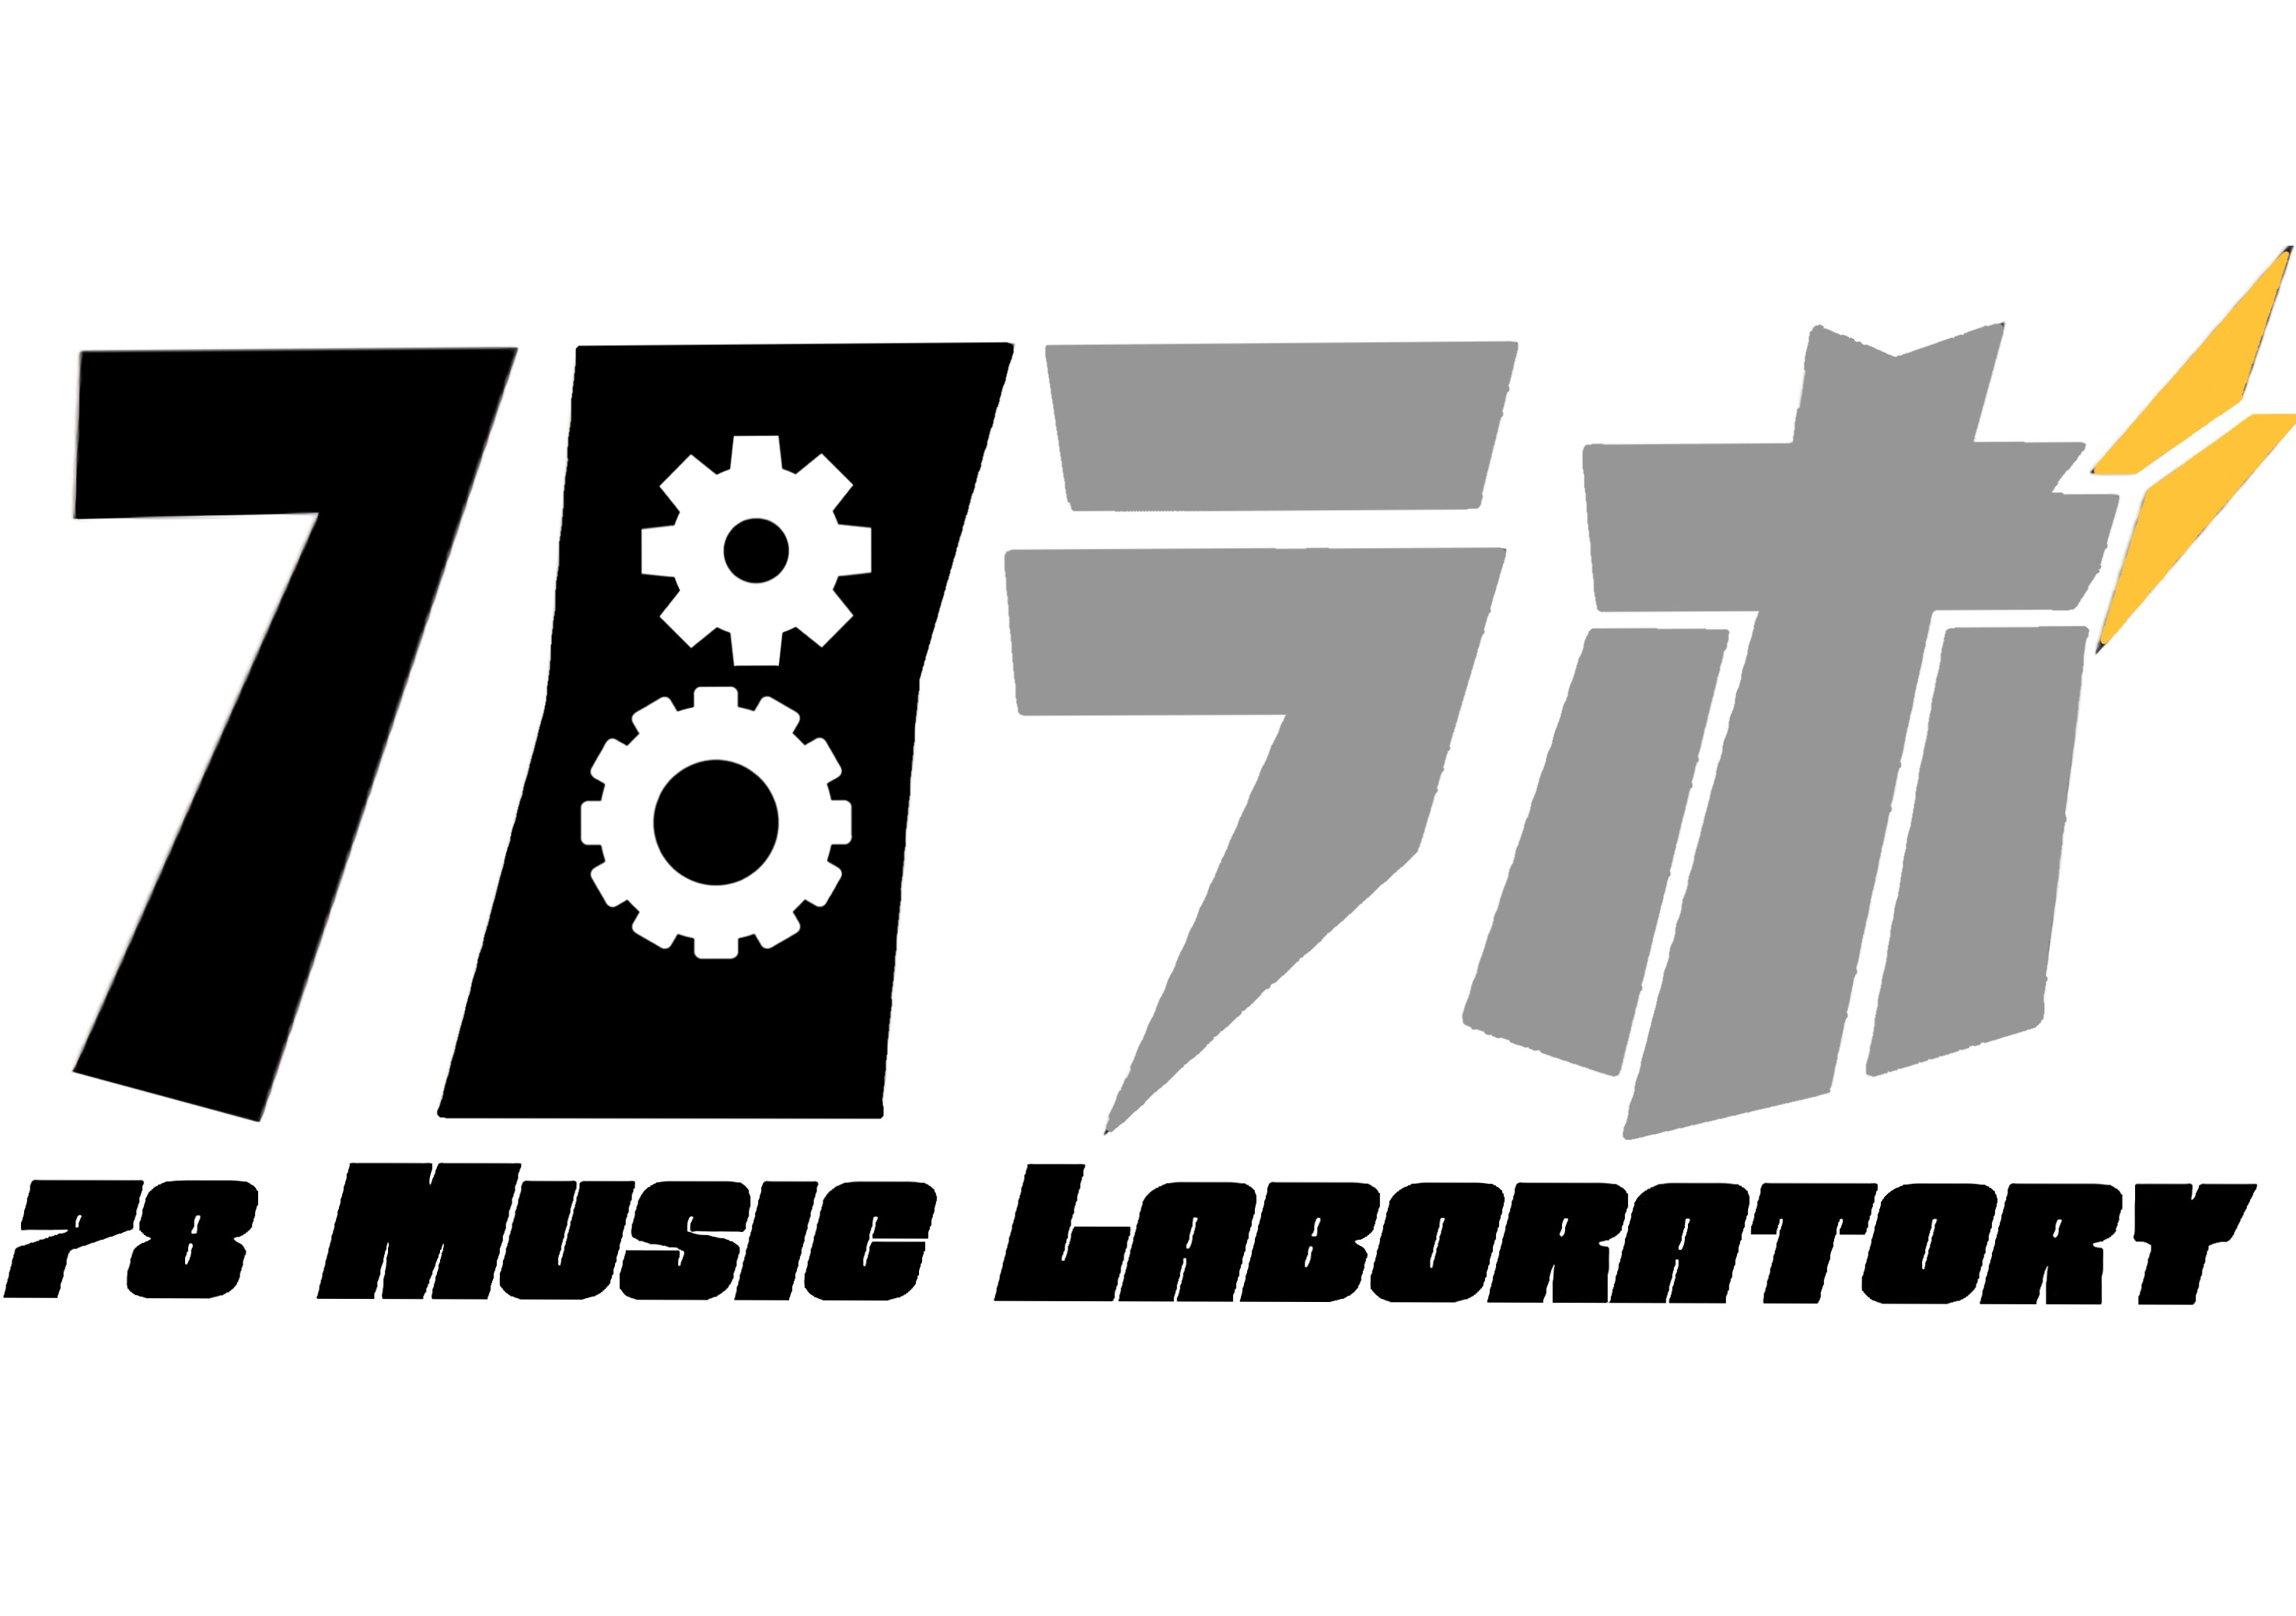 【終】78 Music Laboratory